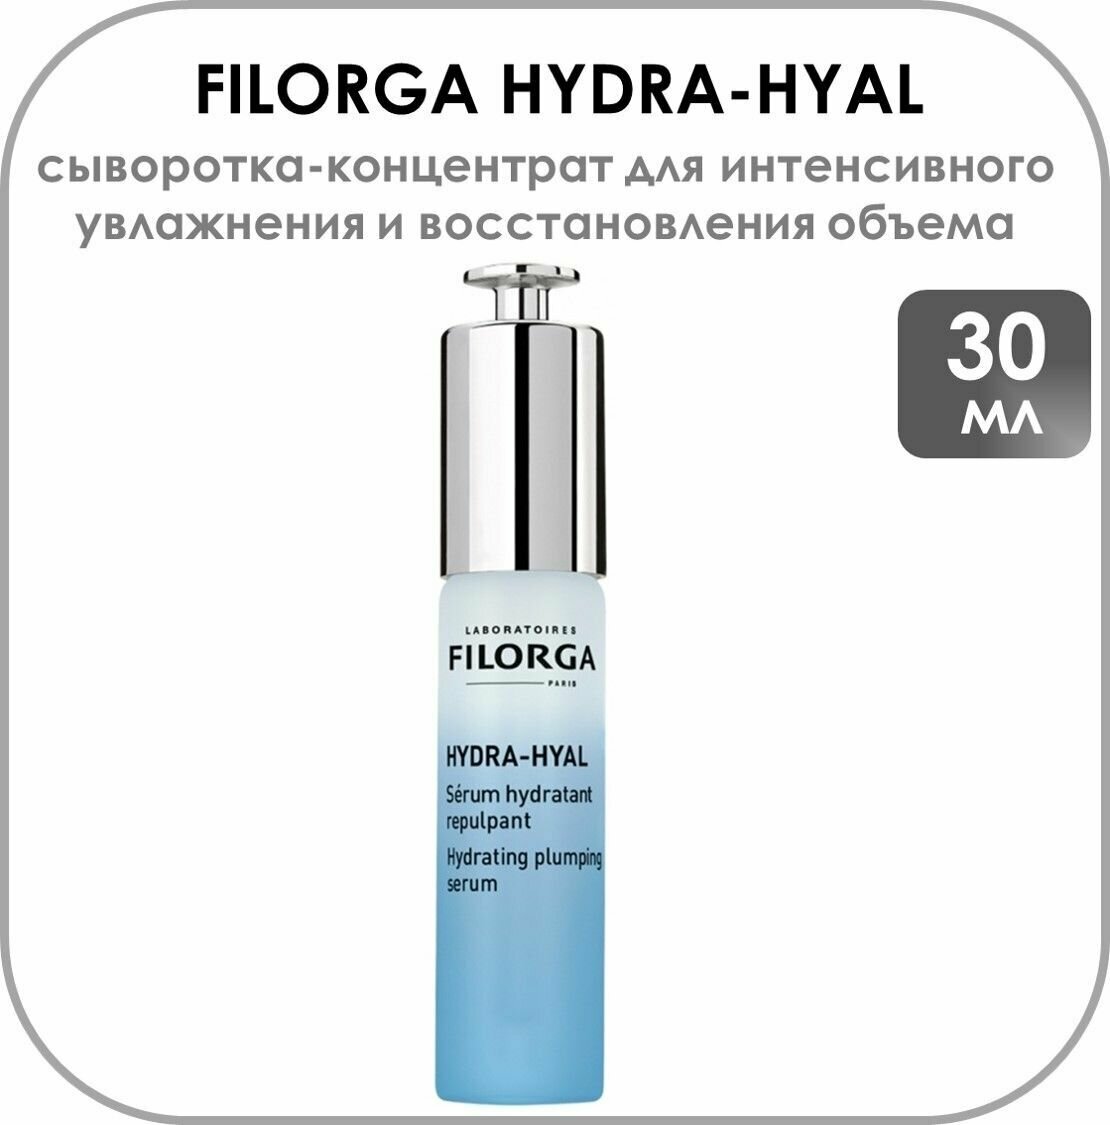 Filorga HYDRA-HYAL Сыворотка-концентрат для интенсивного увлажнения и восстановления объема, 30 мл